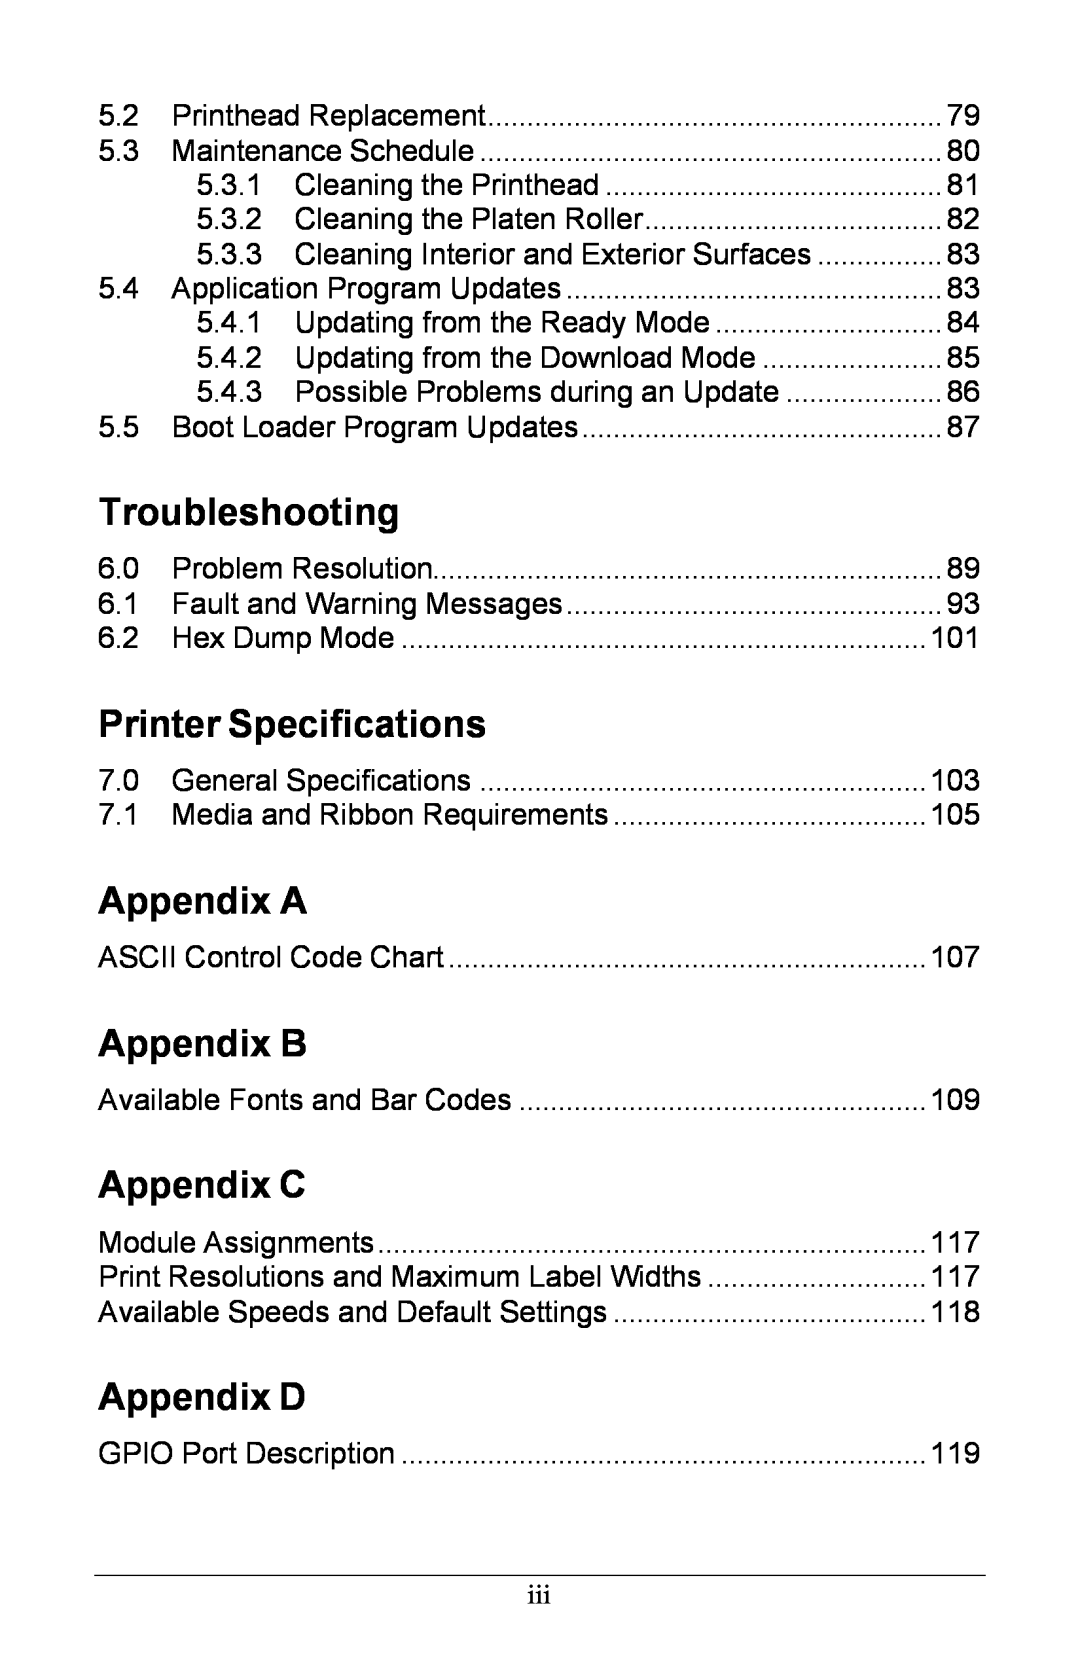 Xerox I Class manual Troubleshooting, Printer Specifications, Appendix A, Appendix B, Appendix C, Appendix D 